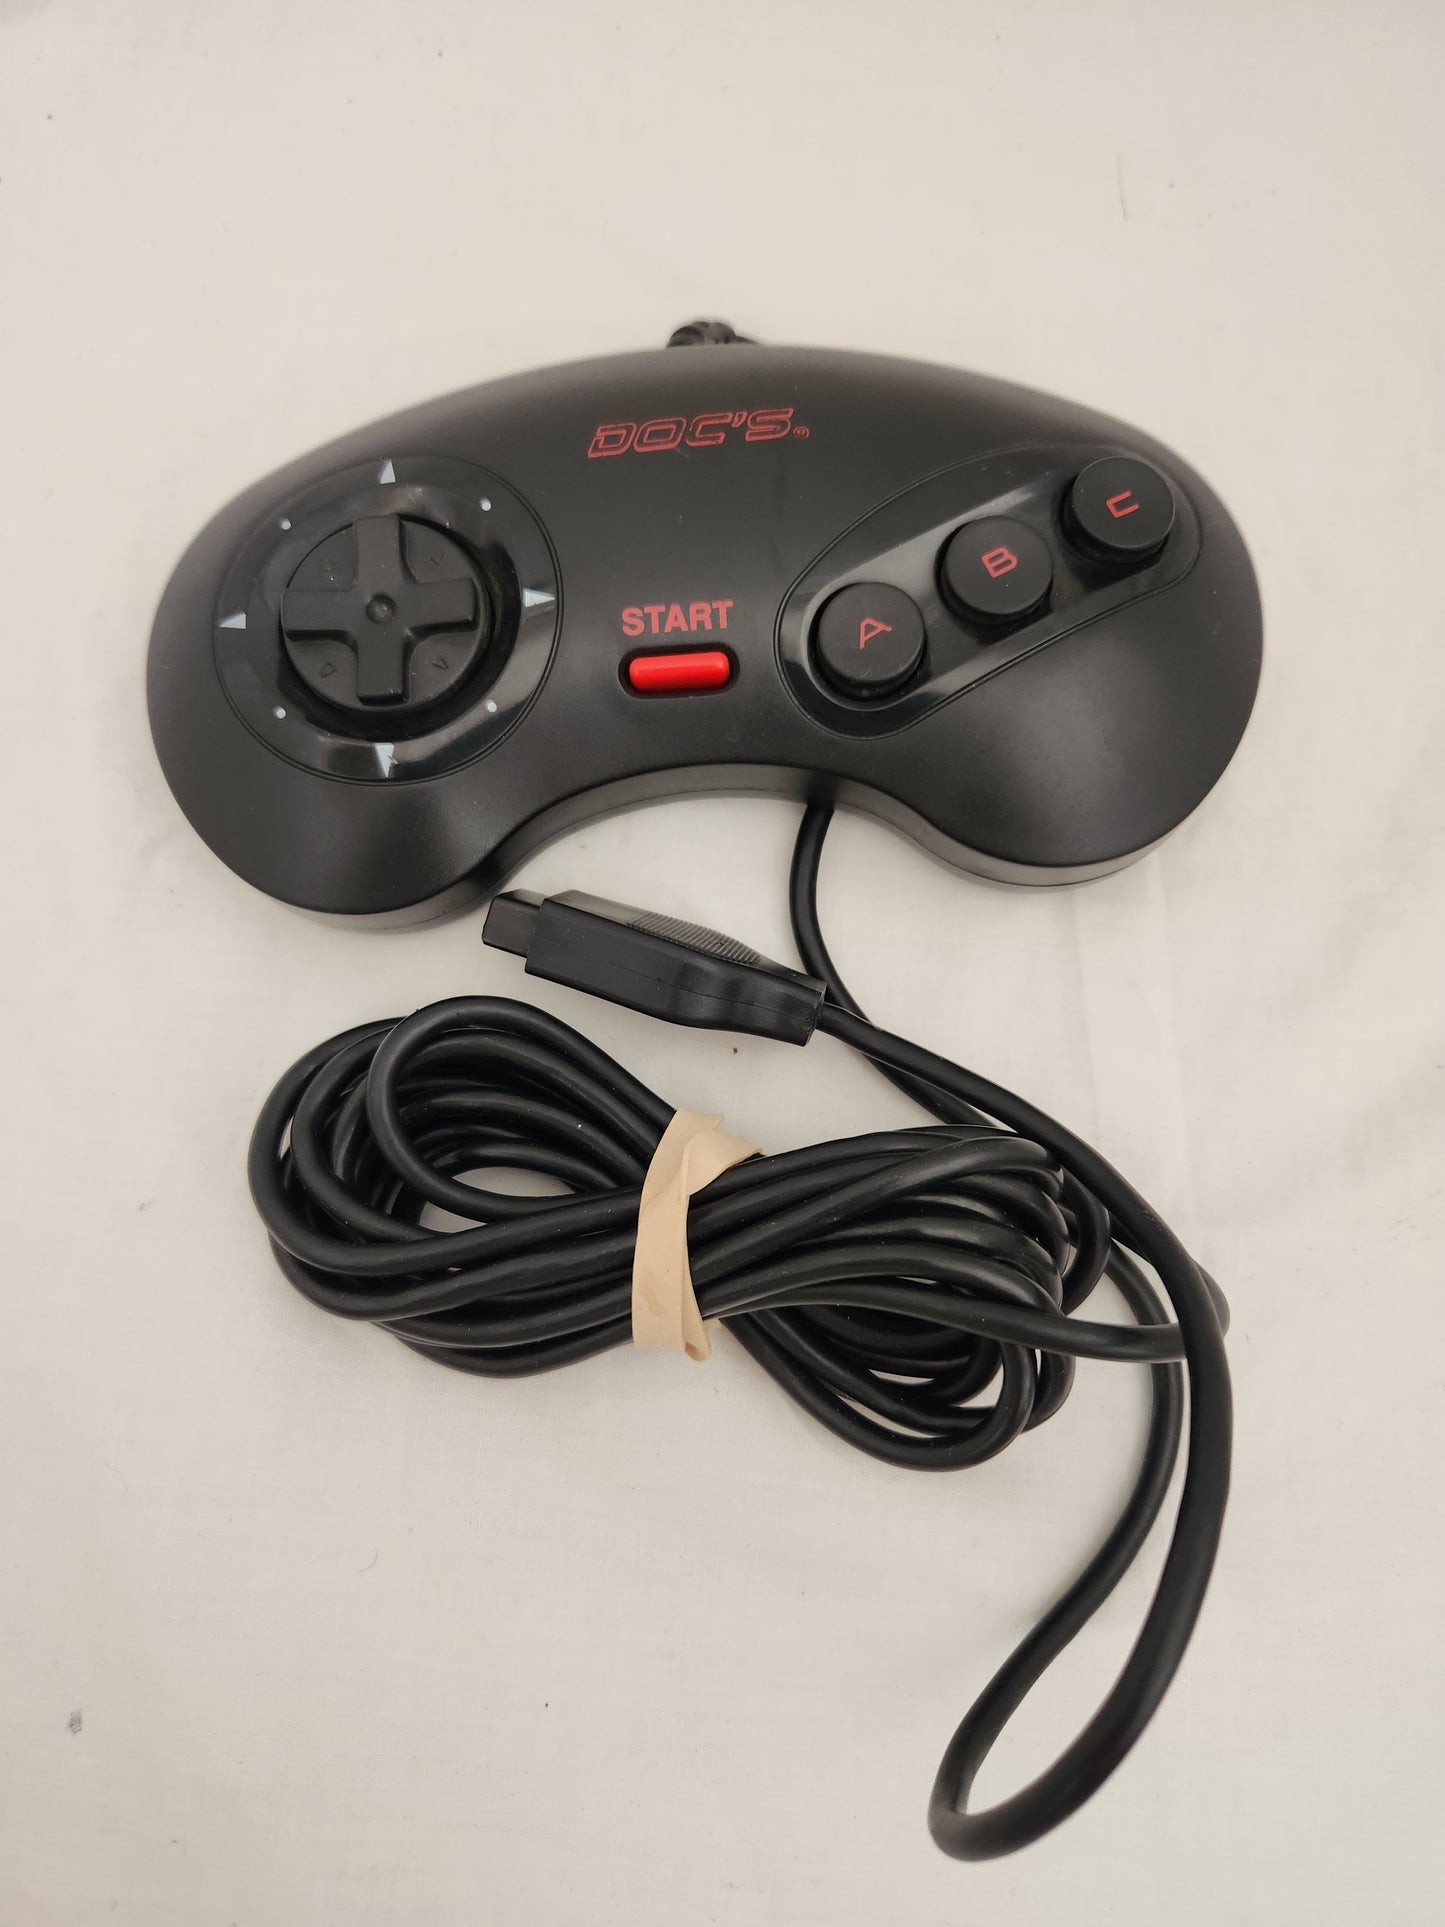 Doc's 3-Button Sega Genesis Controller